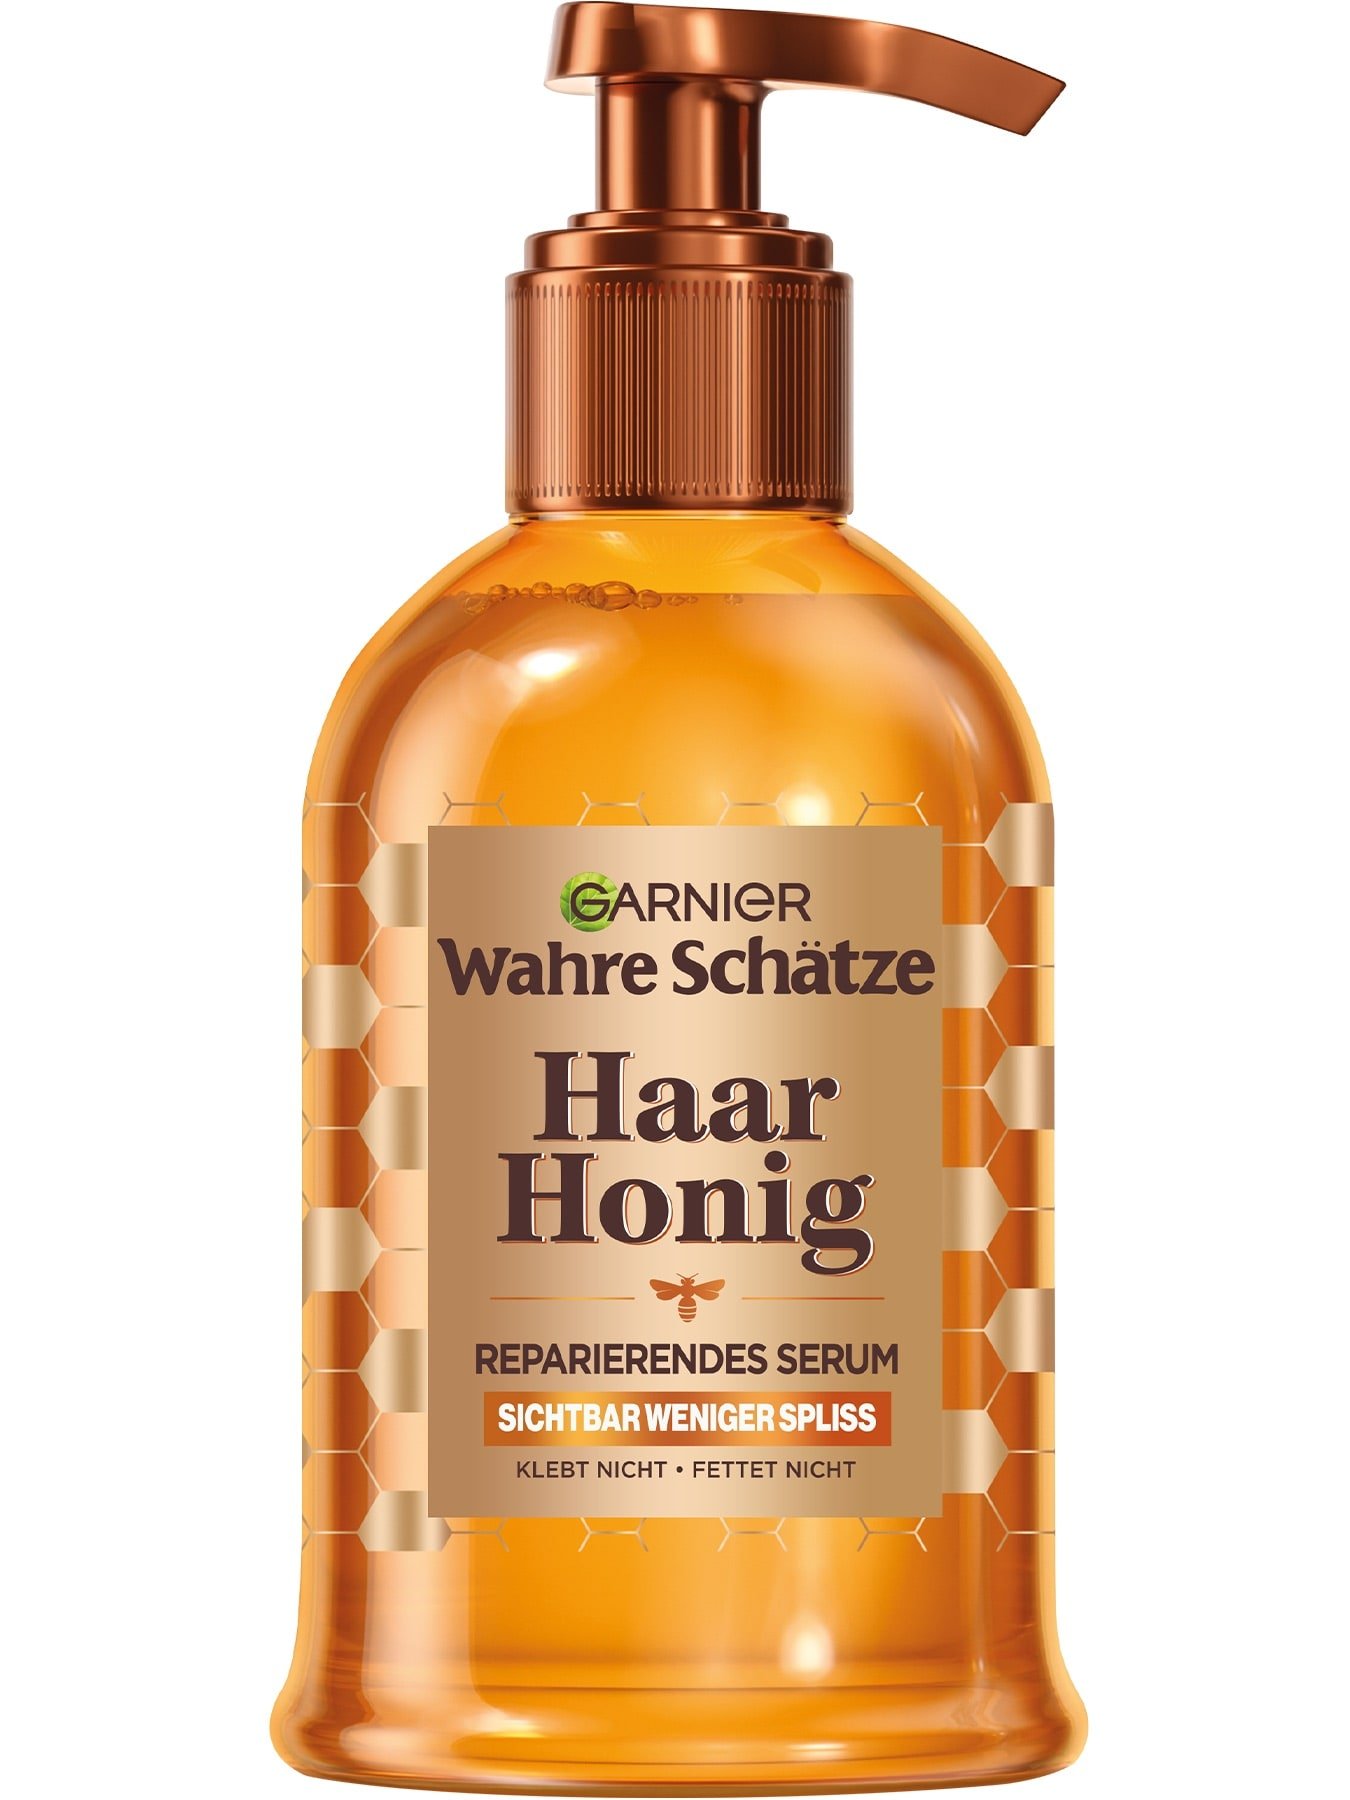 Wahre Schätze Haar Honig Reparierendes Haarserum - Produktabbildung